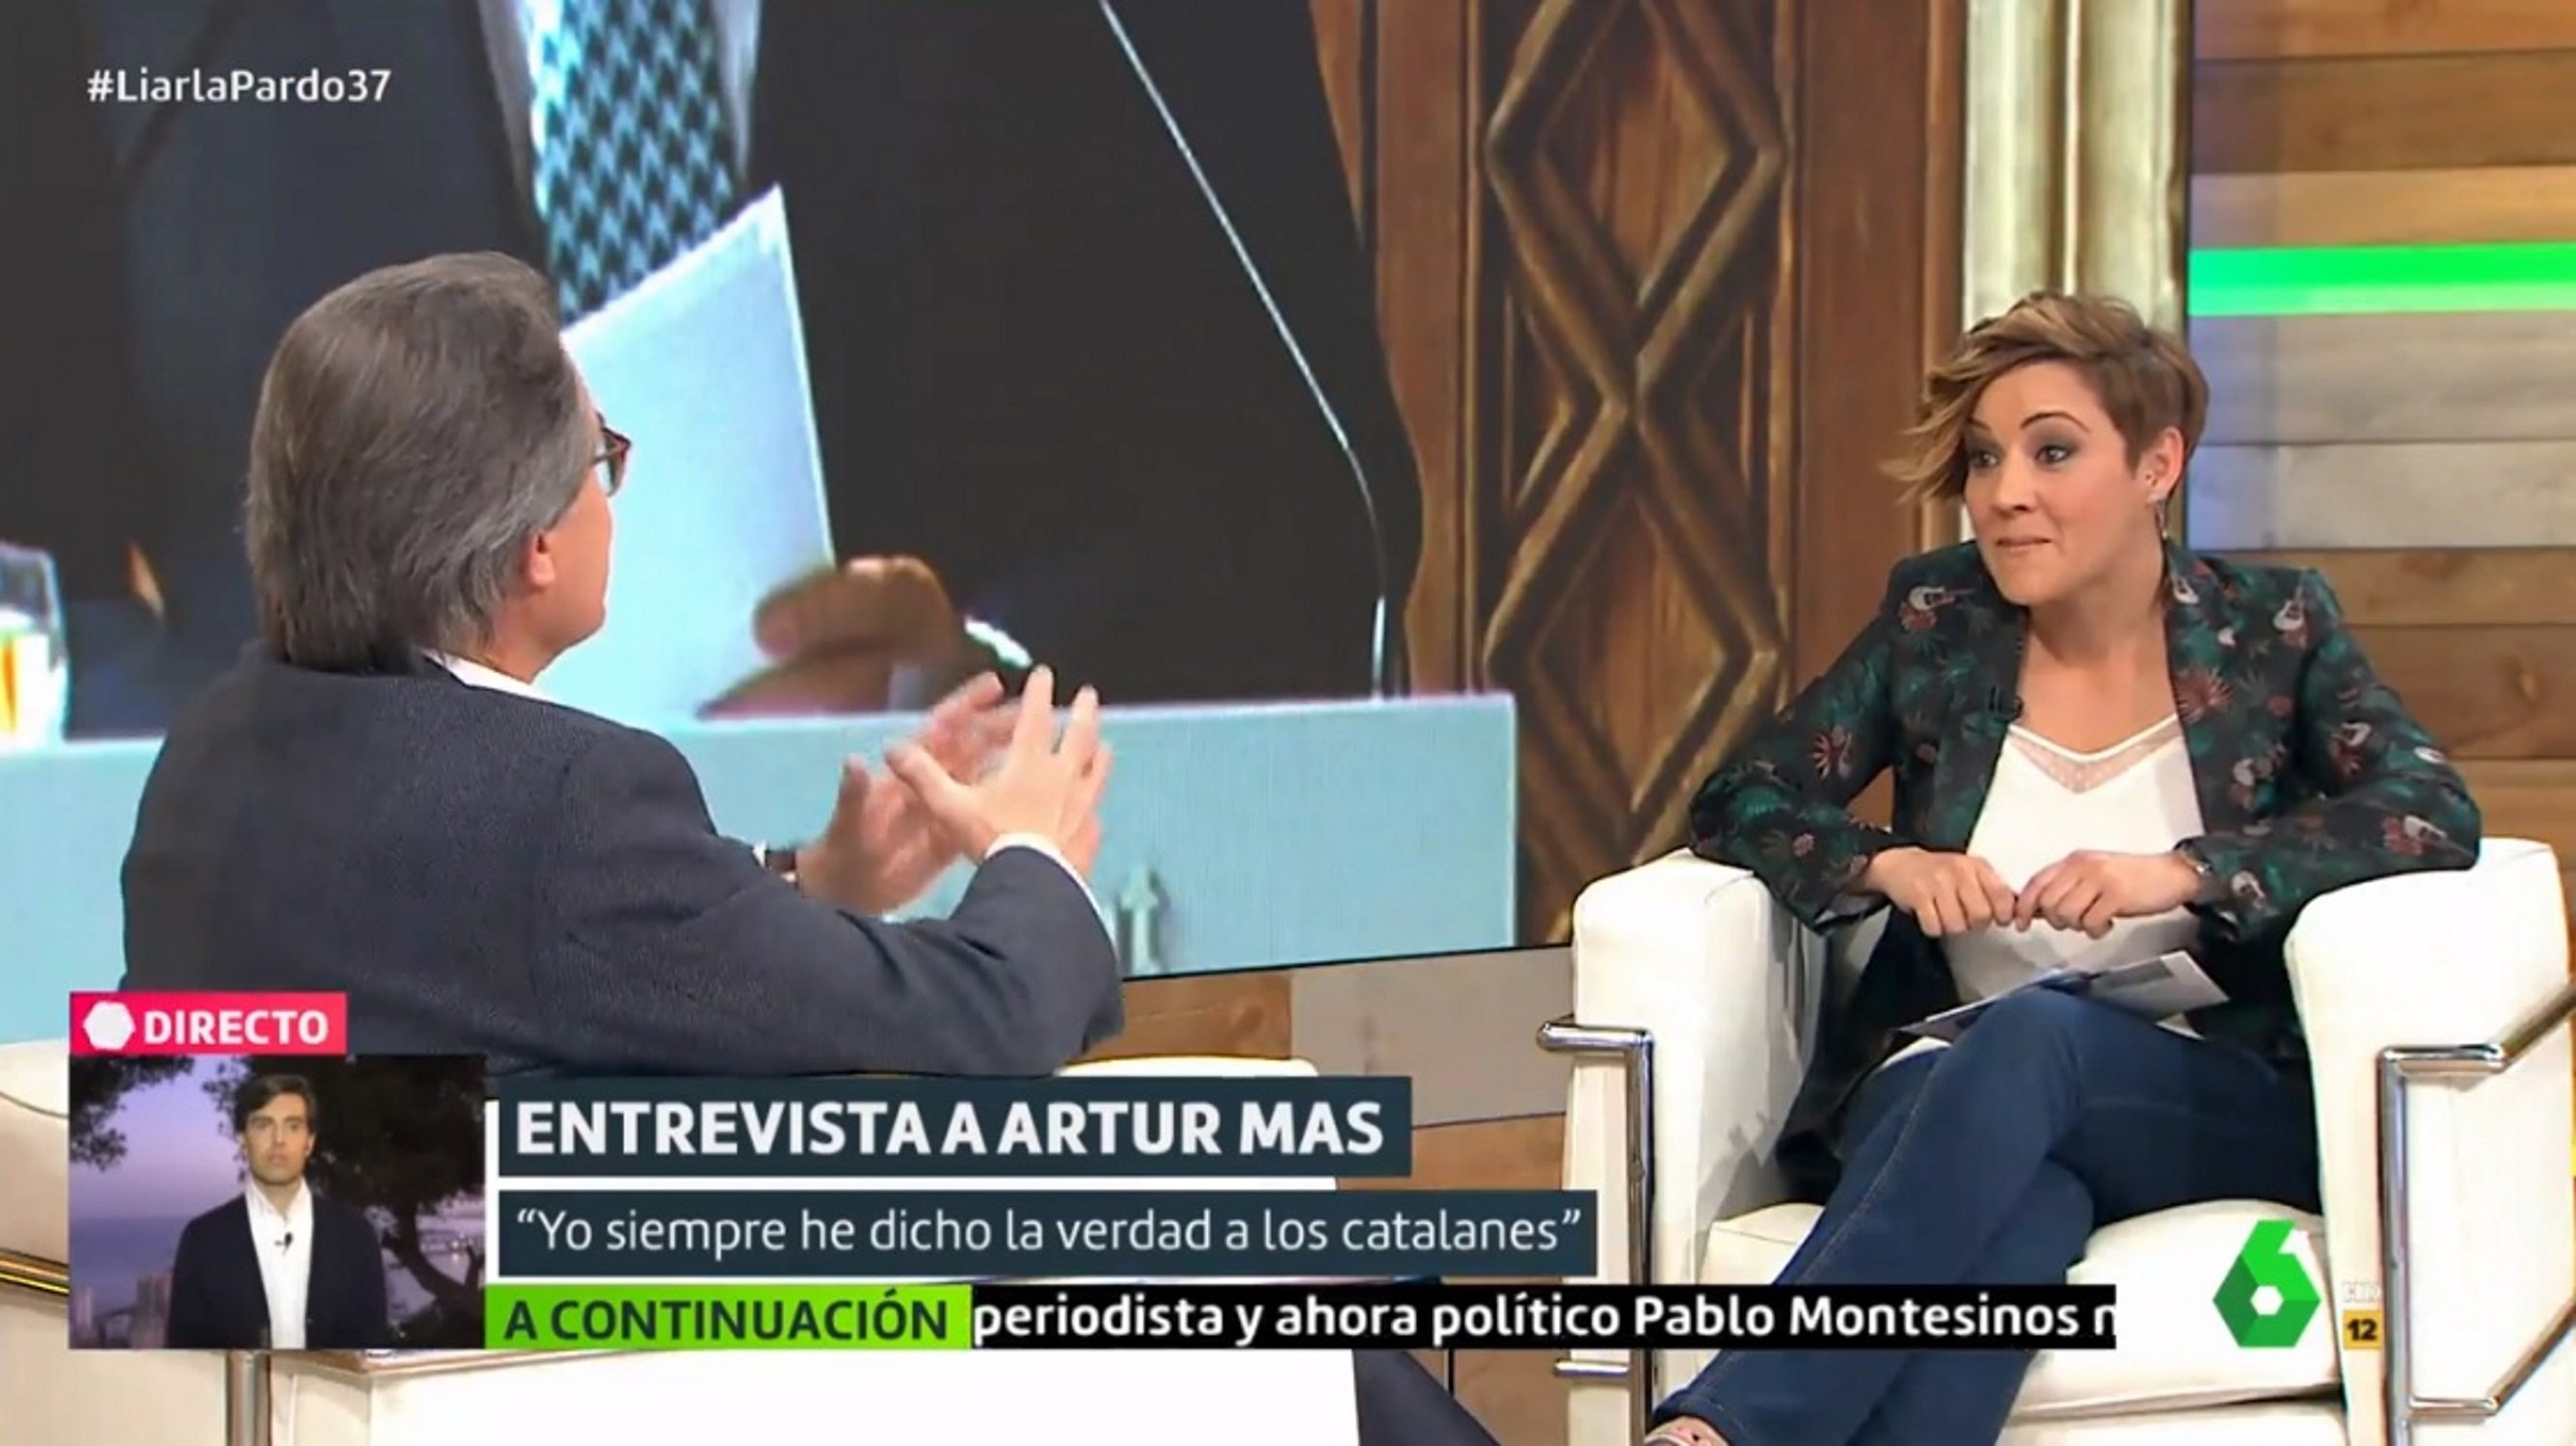 Cristina Pardo perd els papers entrevistant Artur Mas i l’acusa de mentider